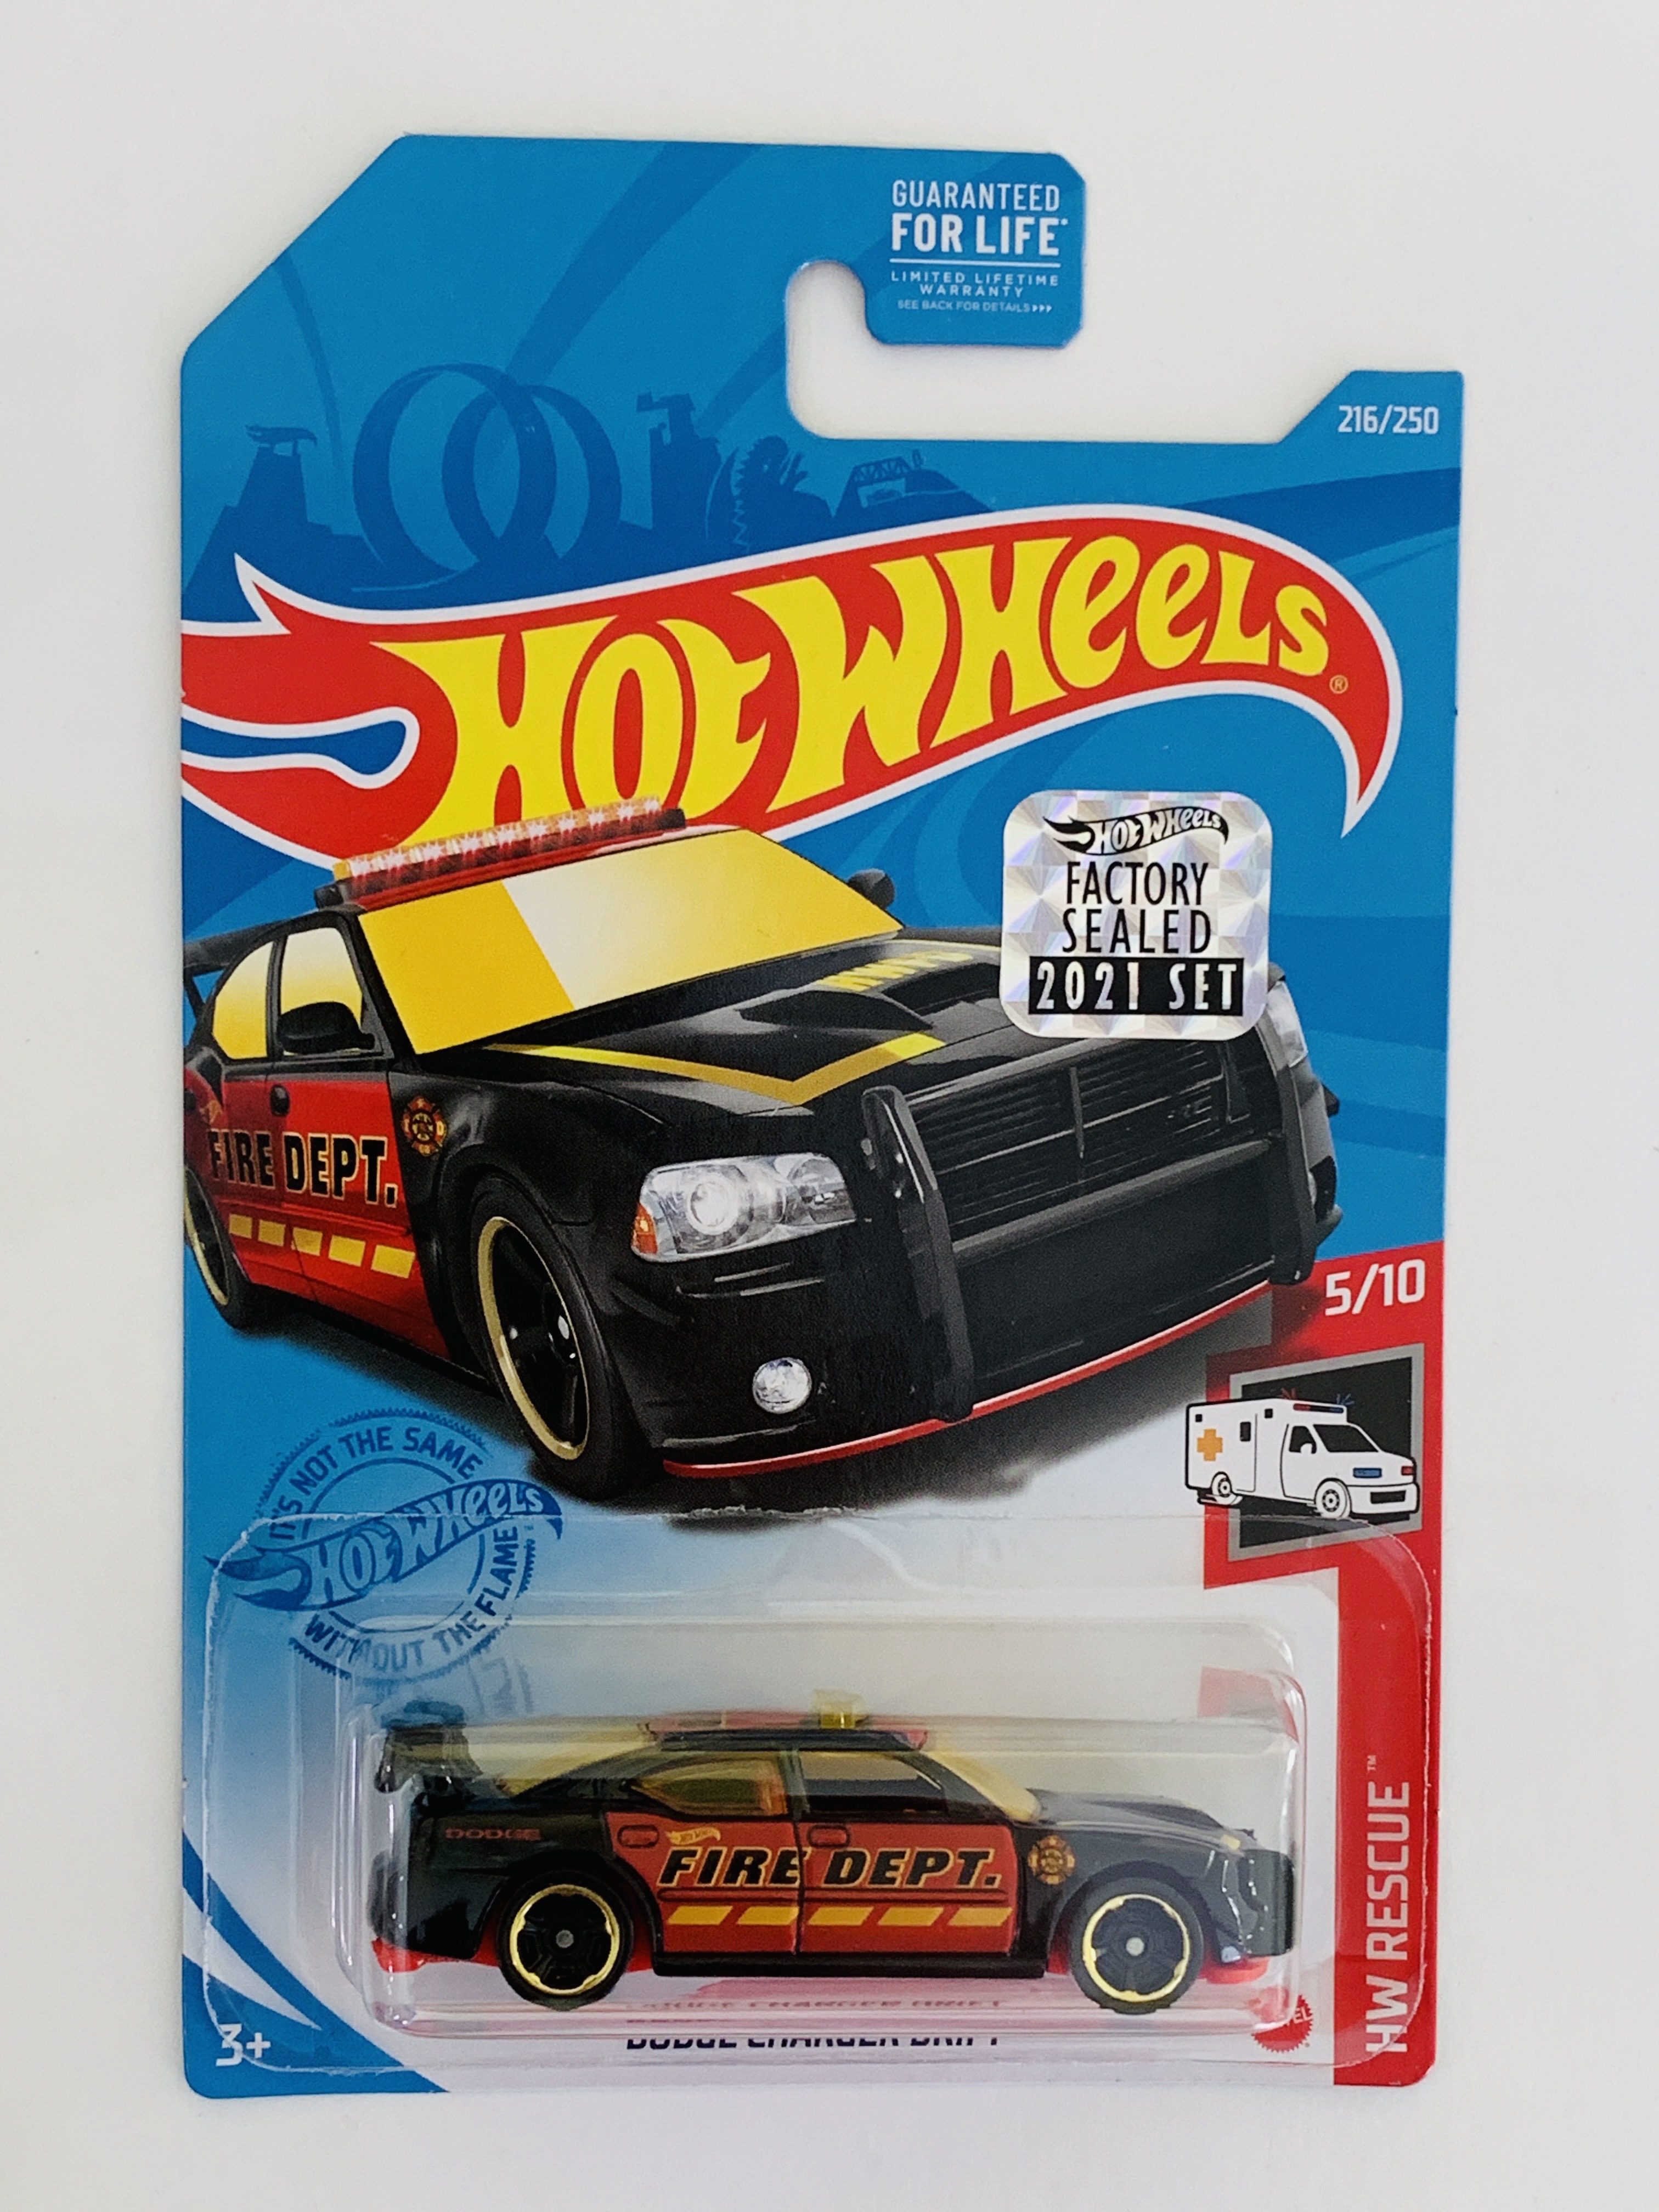 Hot Wheels 2021 Factory Set #216 Dodge Charger Drift